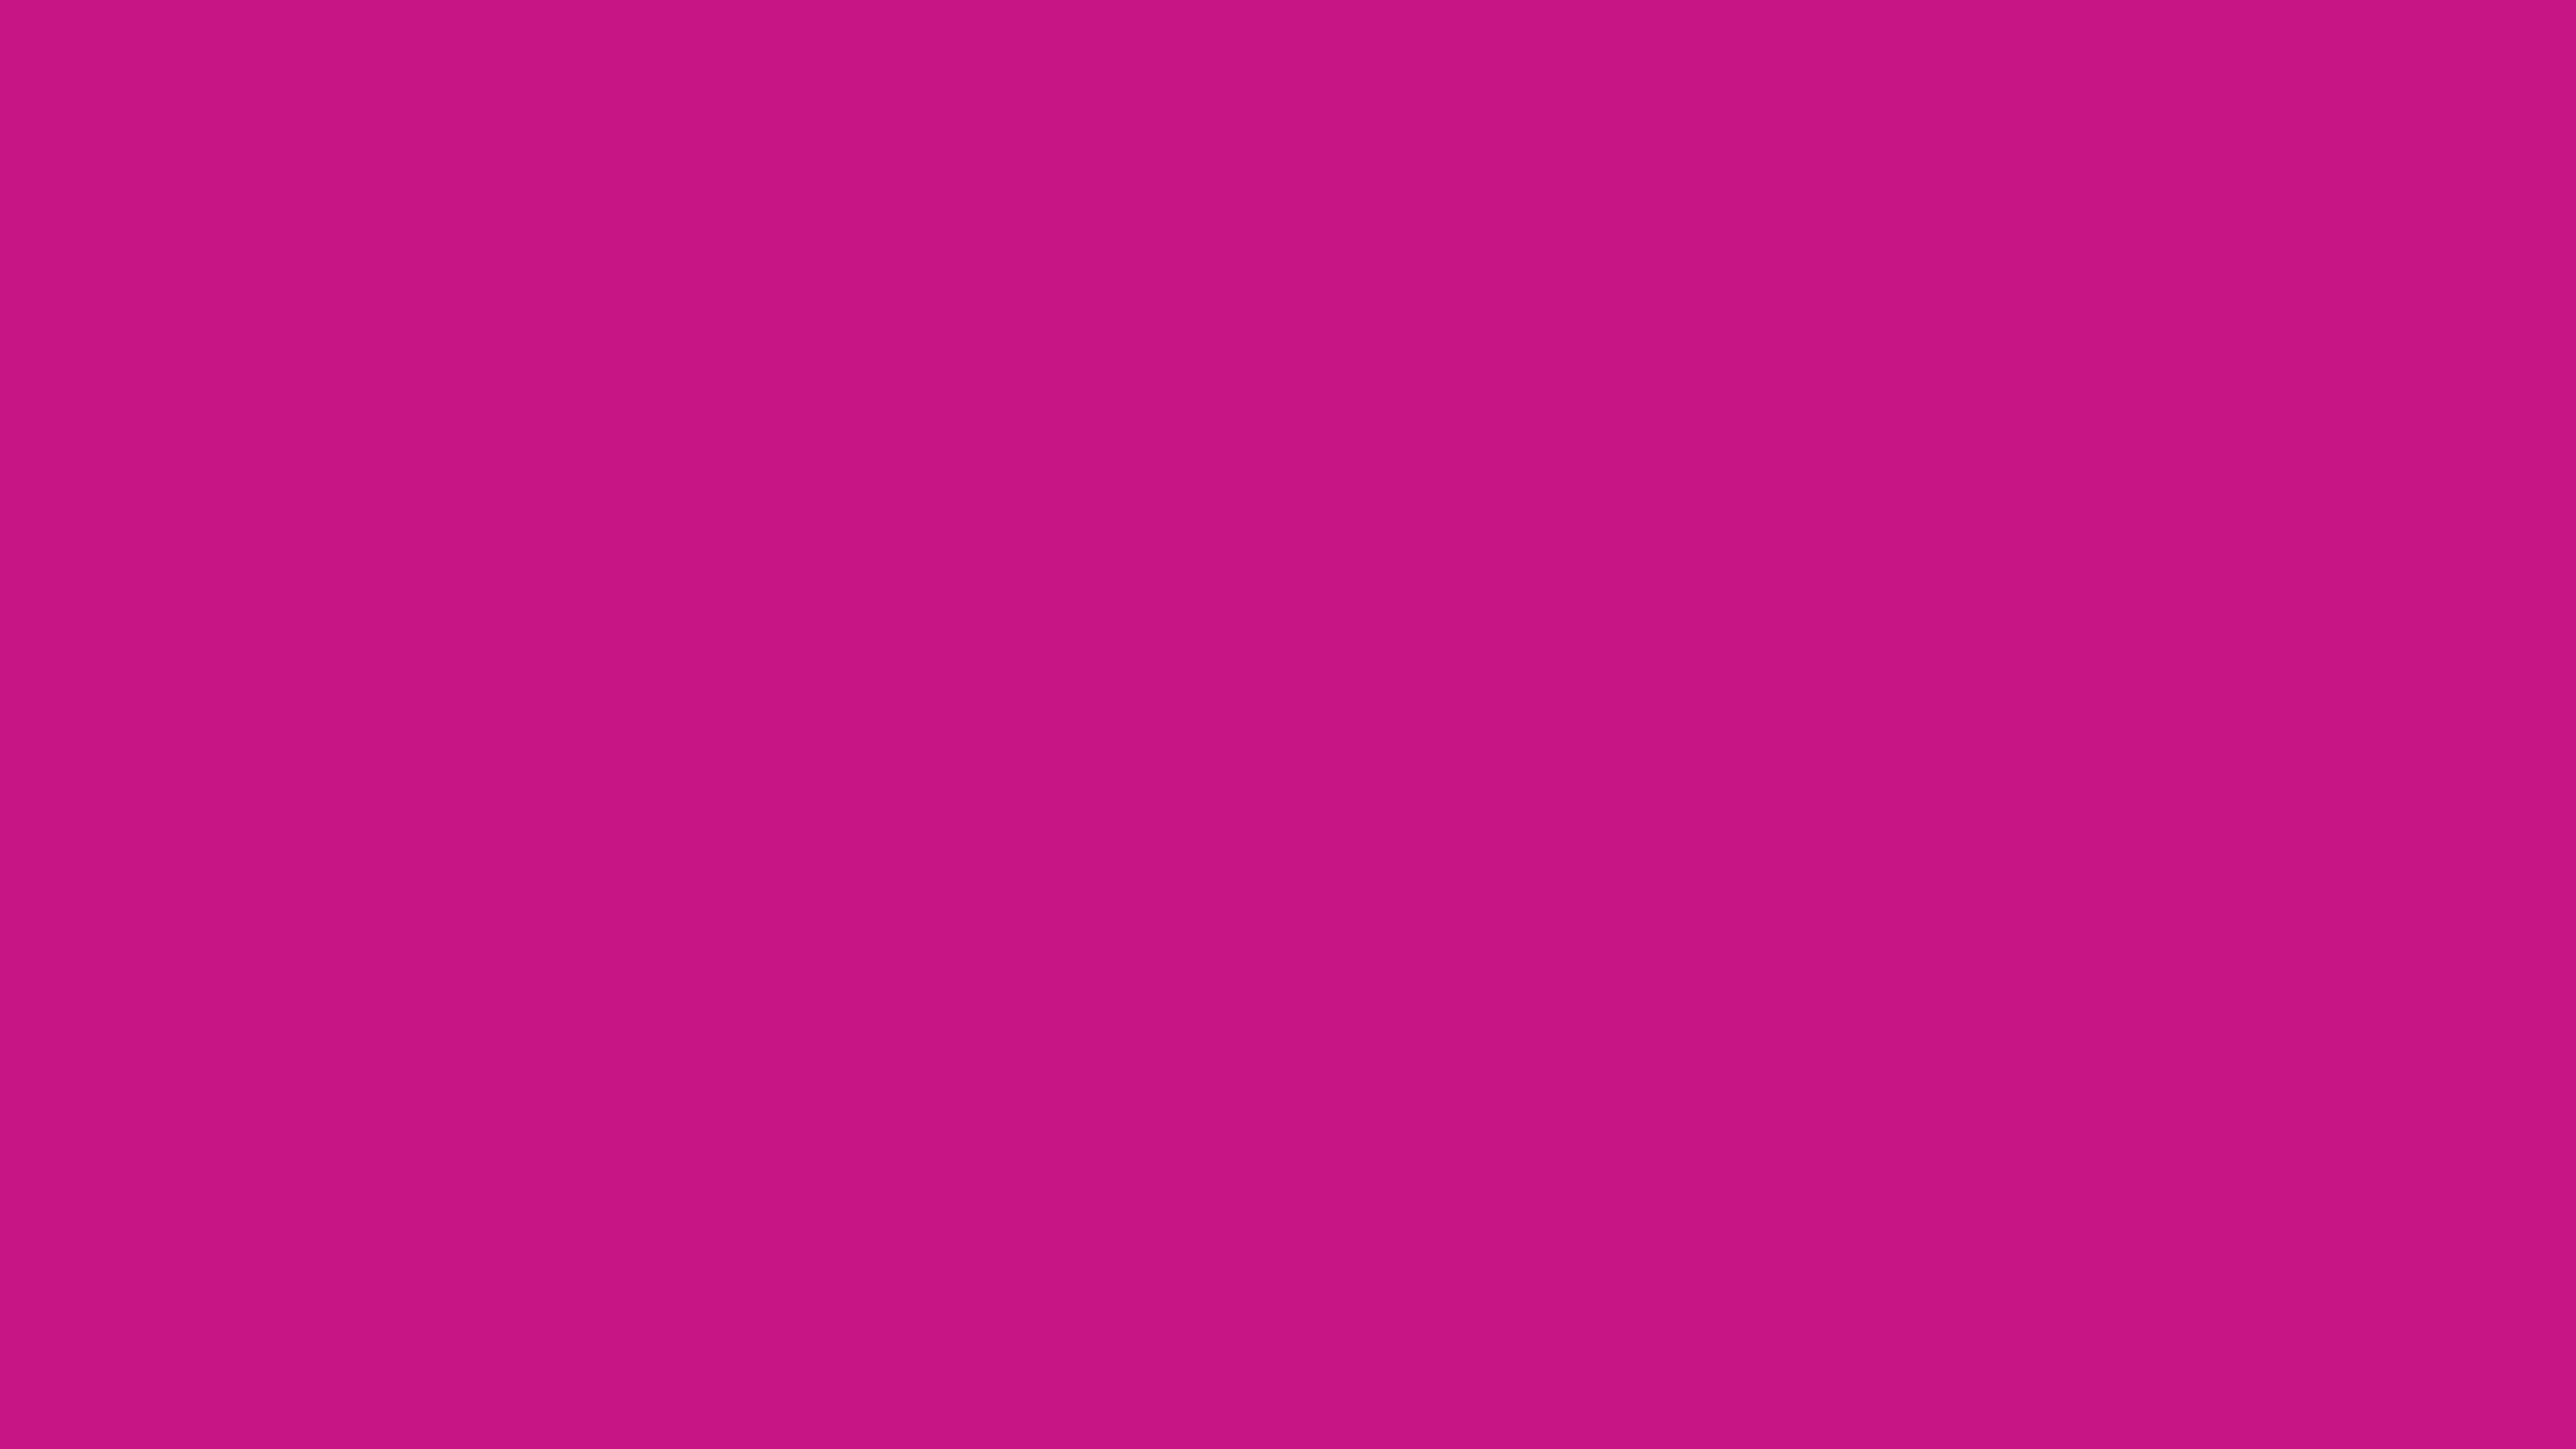 3840x2160 Medium Violet-red Solid Color Background